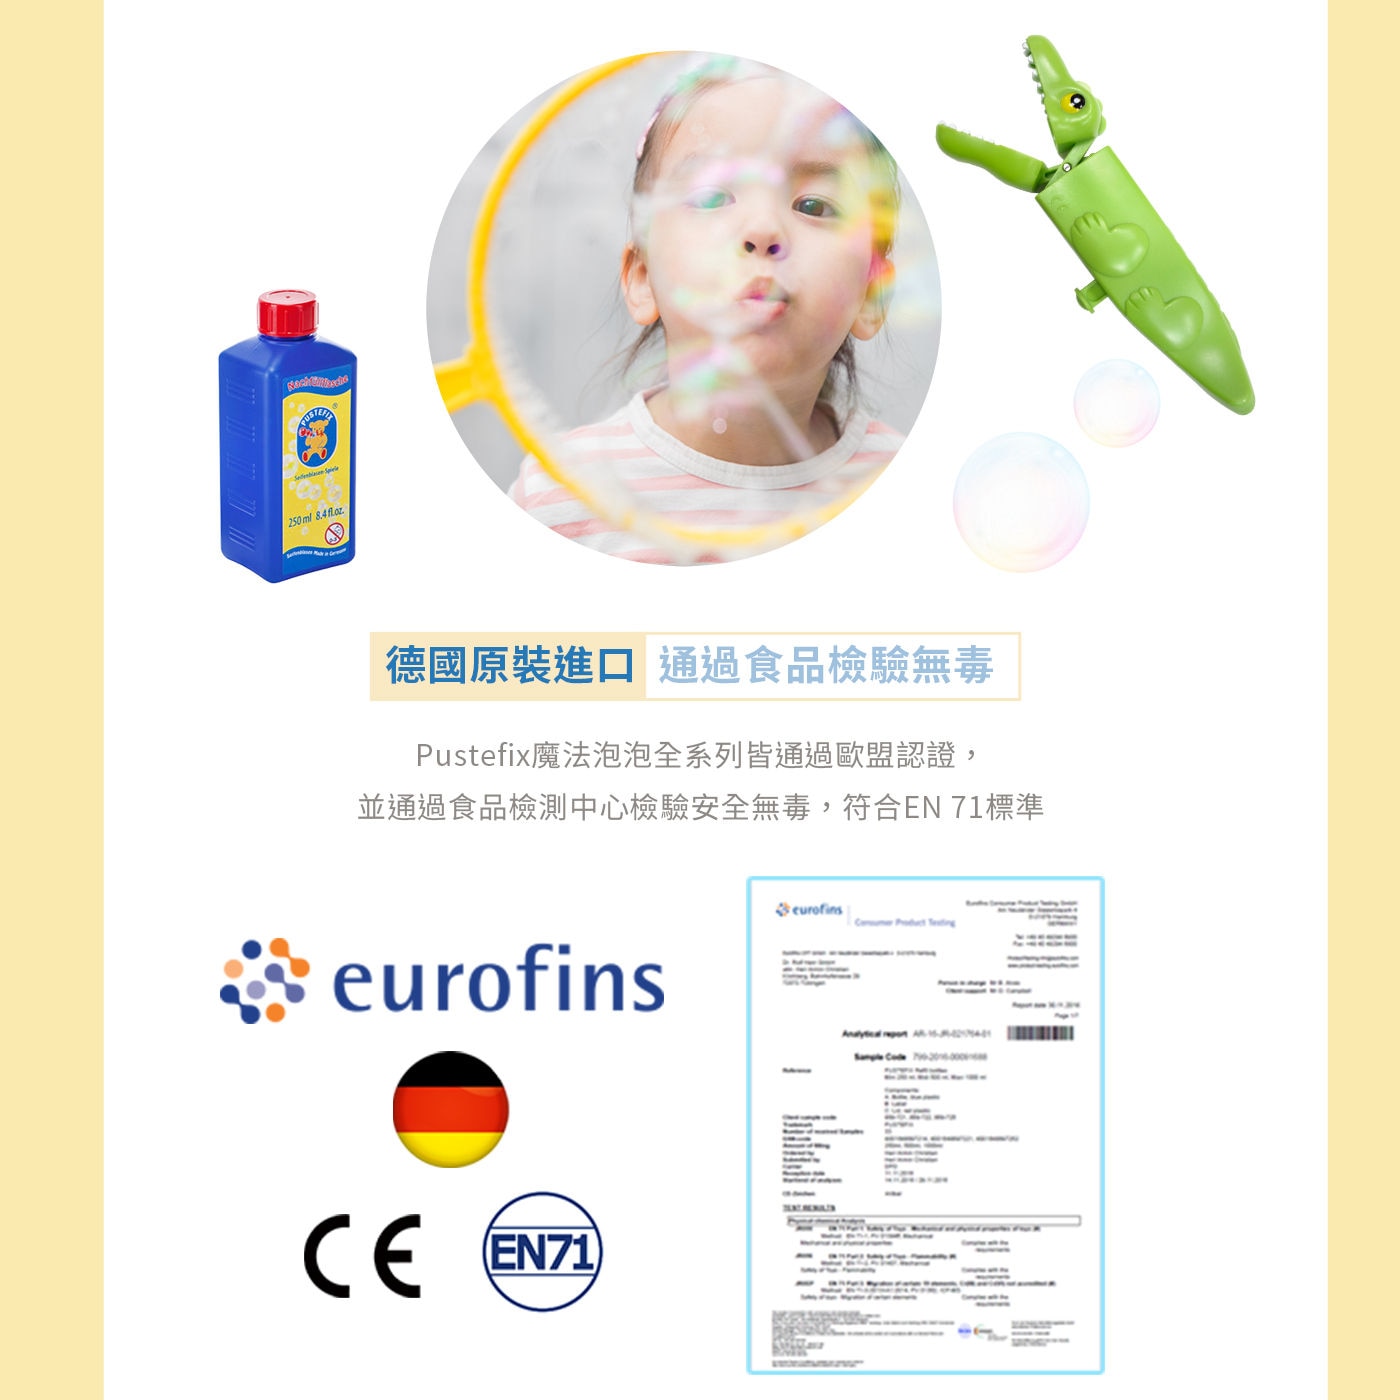 Pustefix 二件式魔法泡泡環+ 泡泡補充液 2500毫升德國原裝進口通過食品檢驗無毒歐盟認證